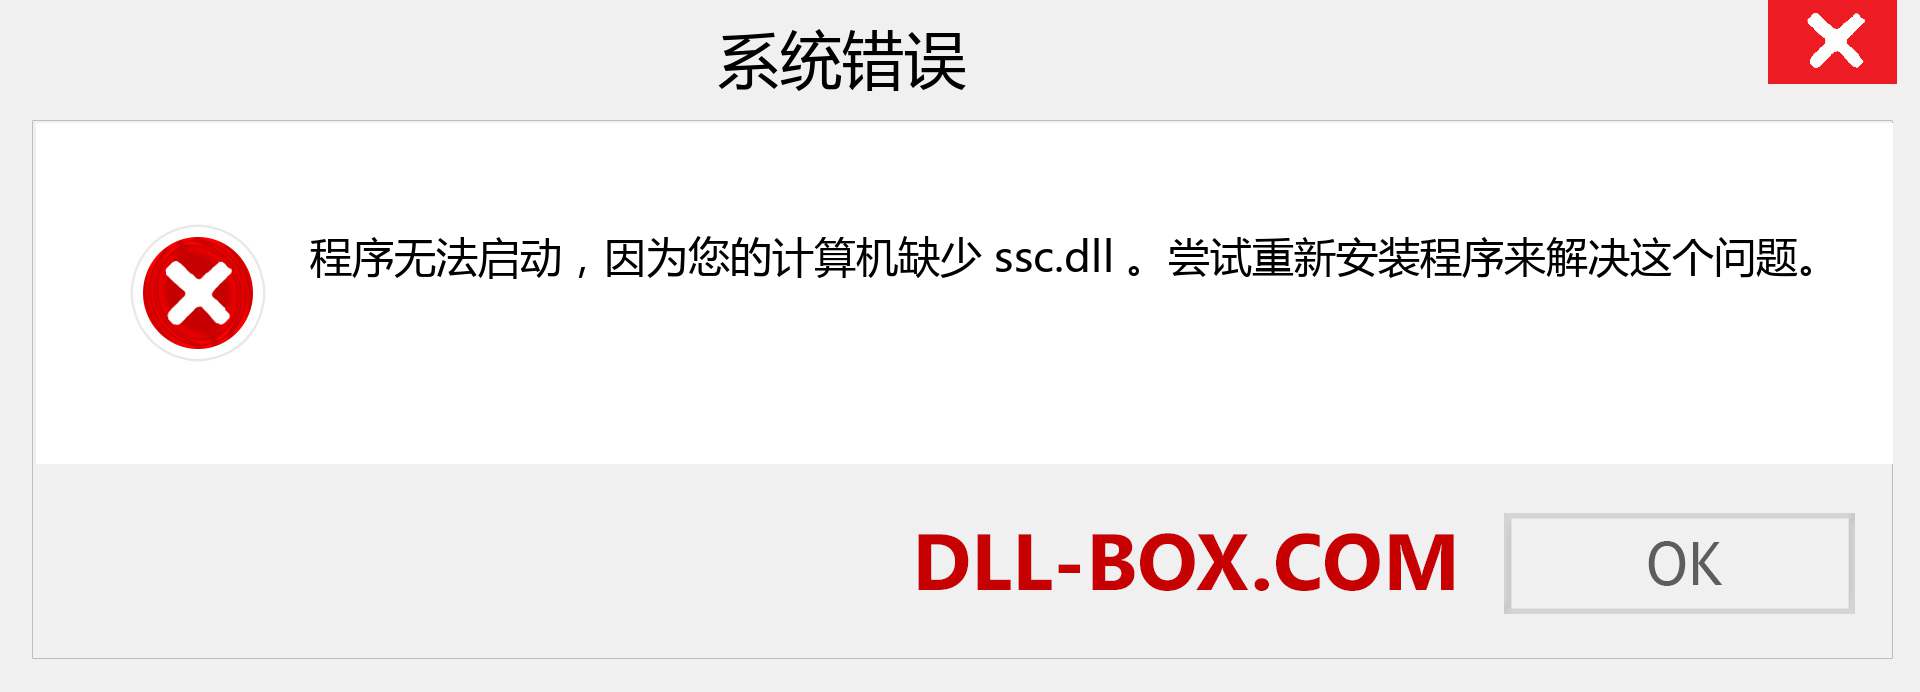 ssc.dll 文件丢失？。 适用于 Windows 7、8、10 的下载 - 修复 Windows、照片、图像上的 ssc dll 丢失错误